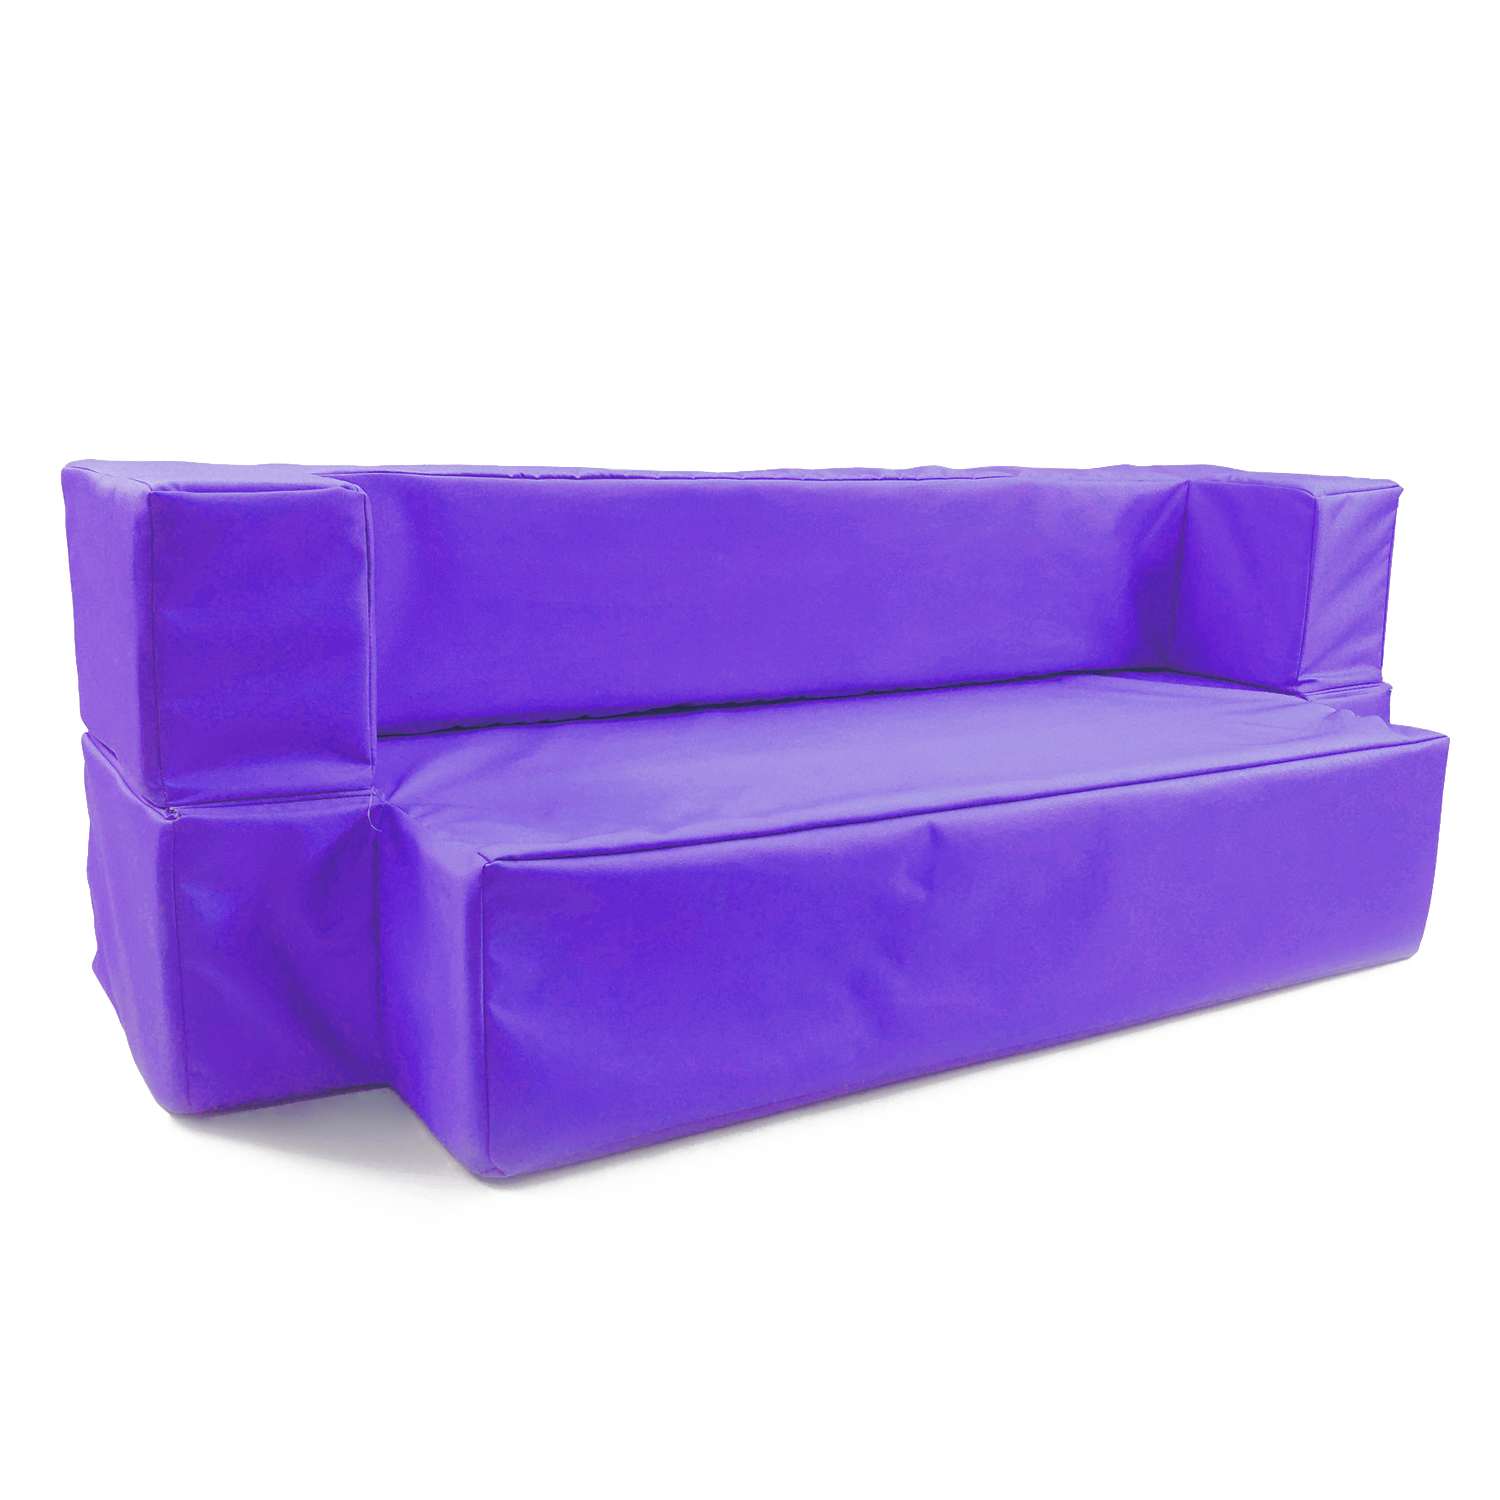 Диван-кровать Hotenok 2 в 1 мягкий Черничное мороженное фиолетовый divh101 - фото 1